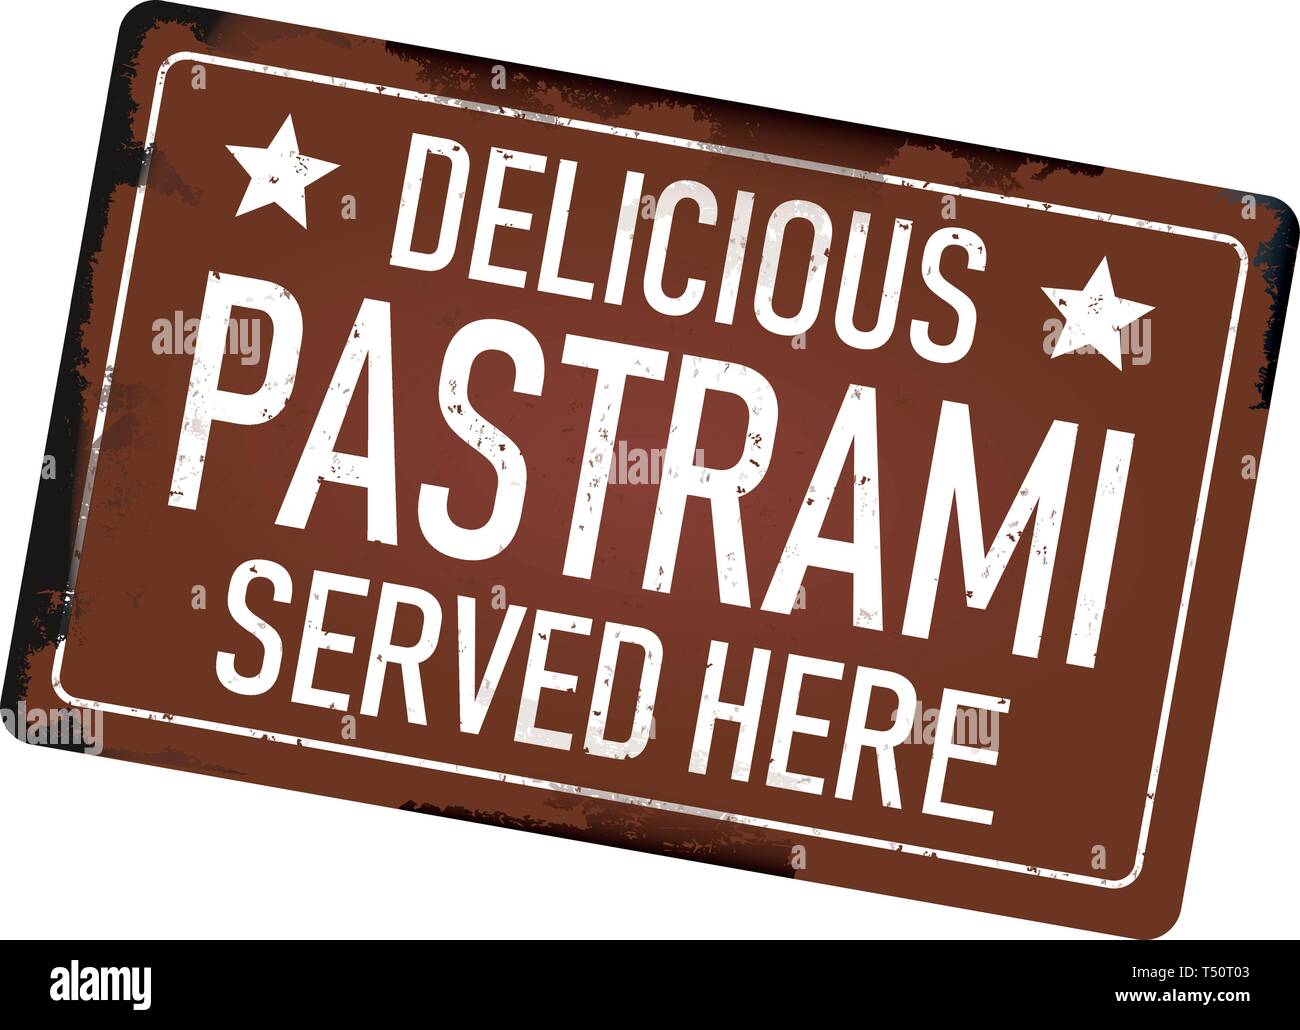 Pastrami délicieux servi ici grungy vintage metal web sign isolated Illustration de Vecteur